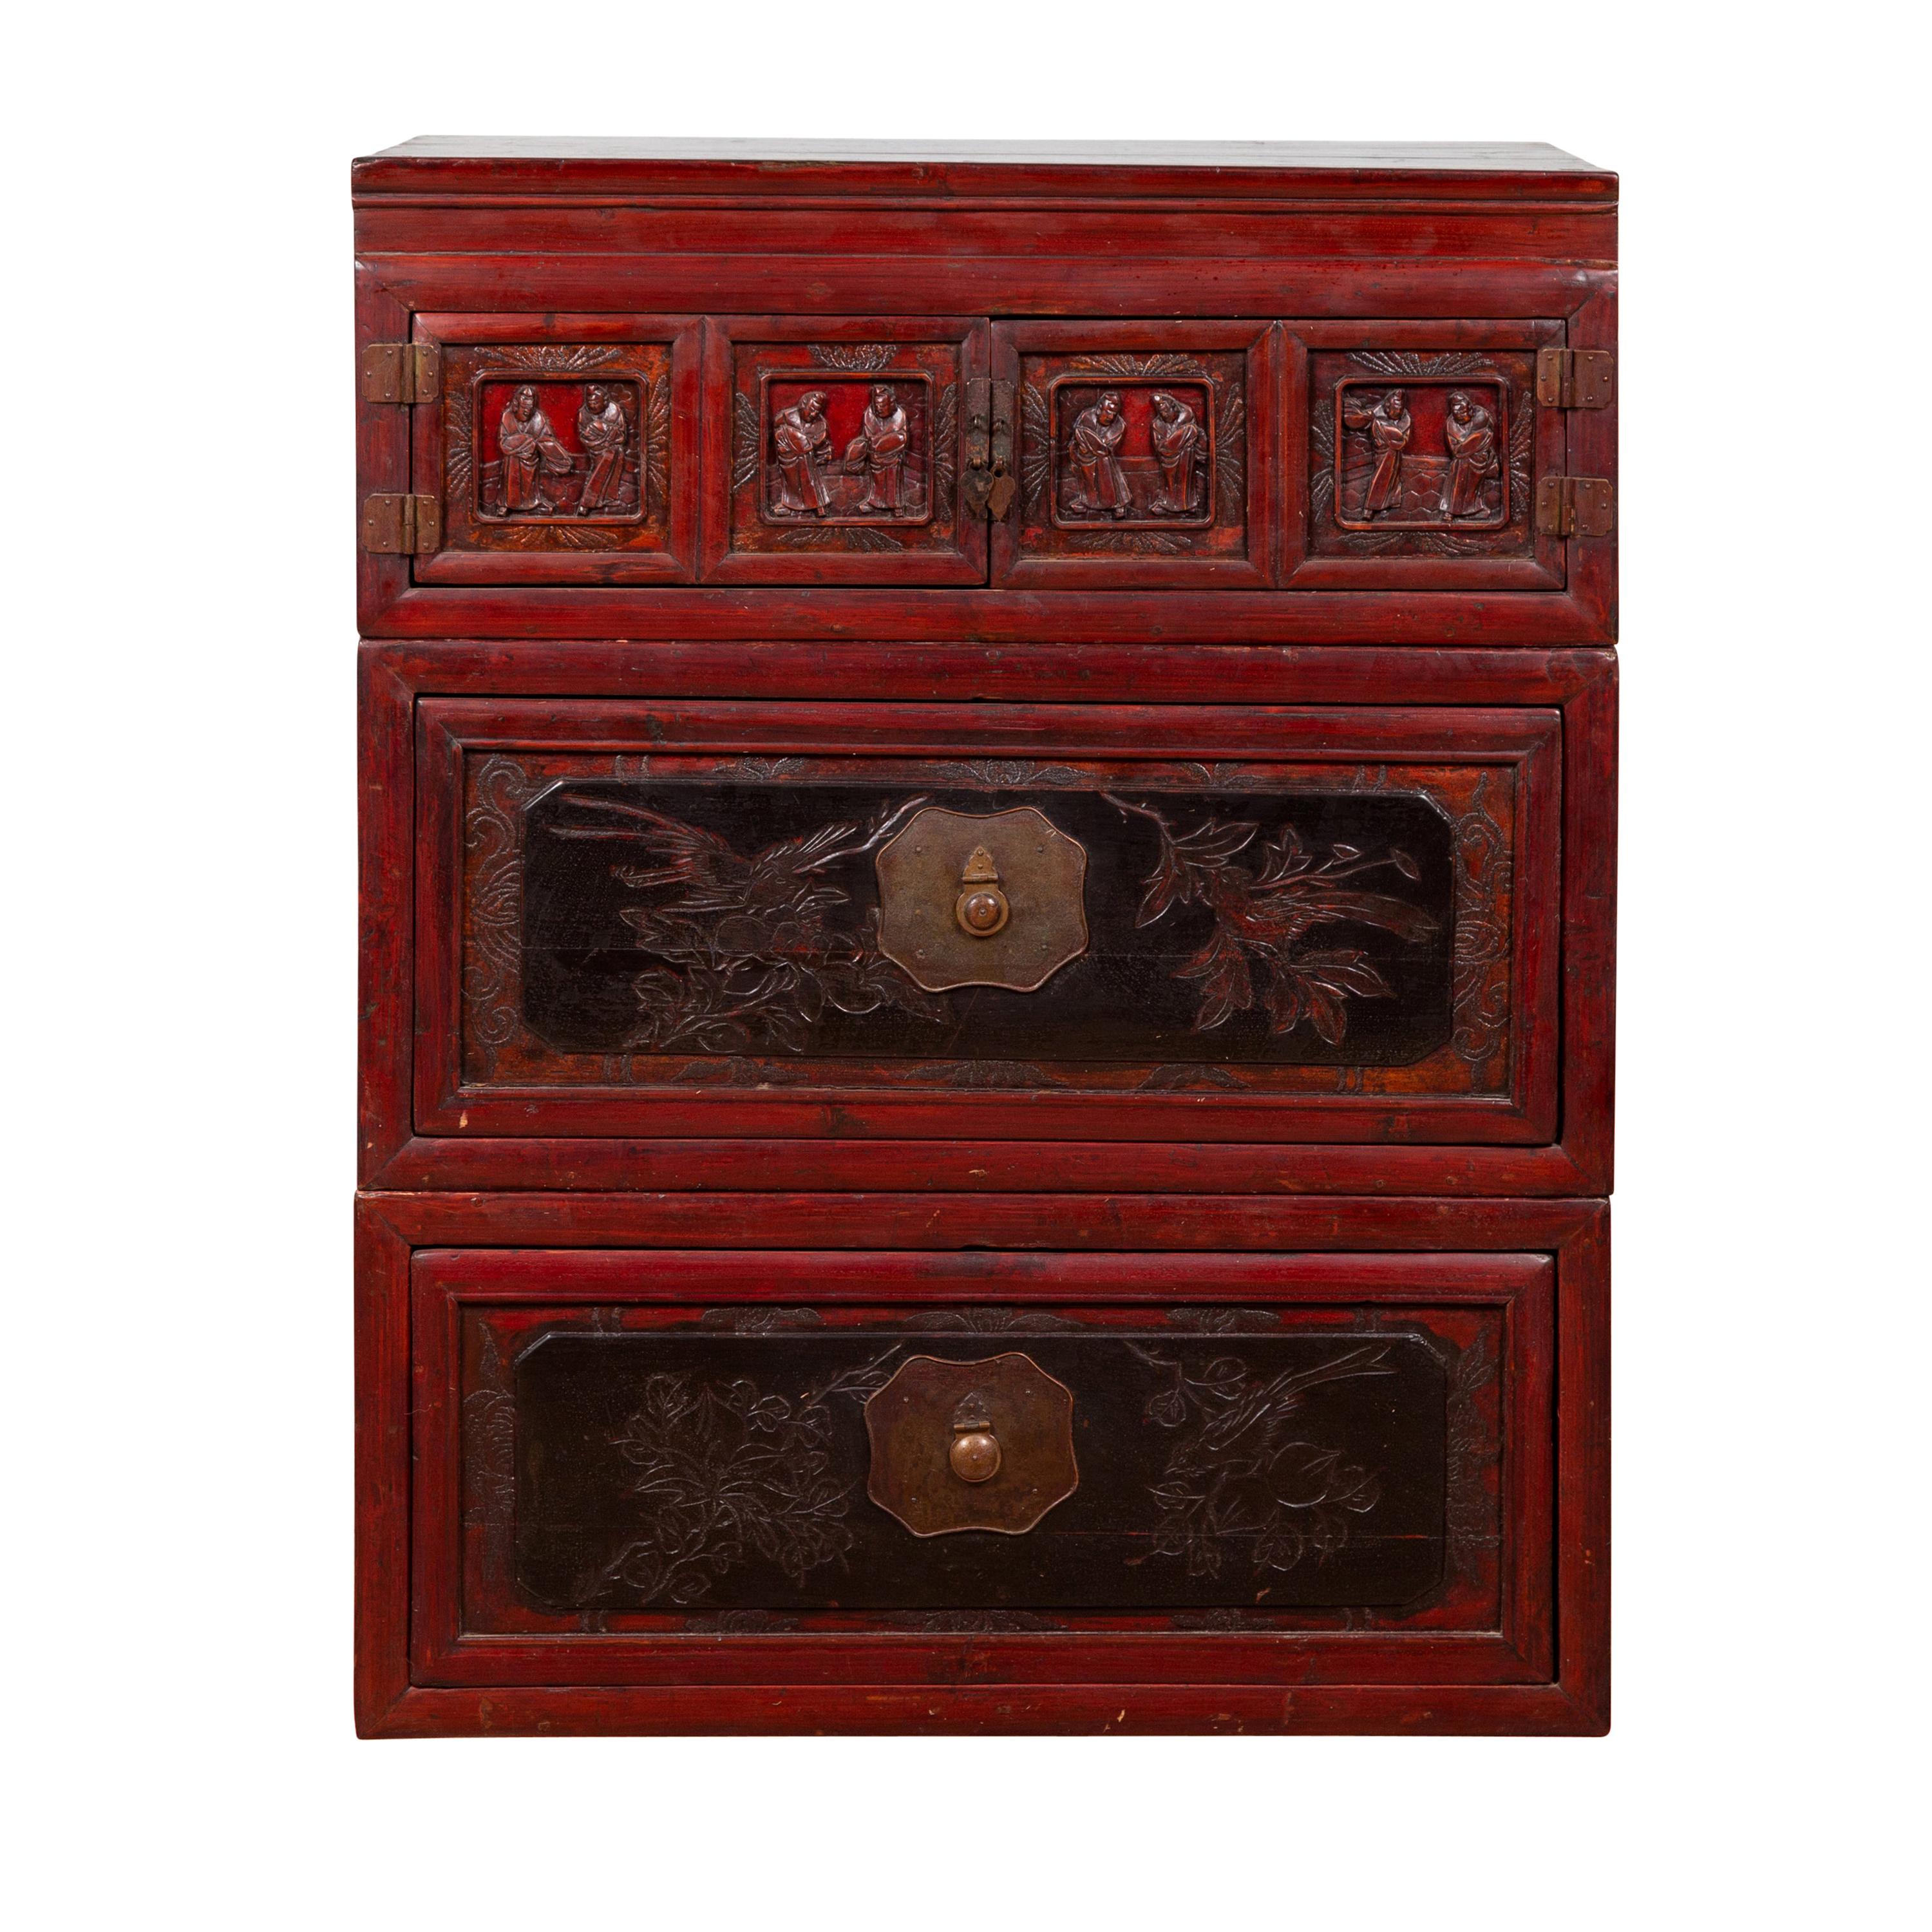 Coffre chinois ancien à trois sections laqué rouge et noir avec figures sculptées